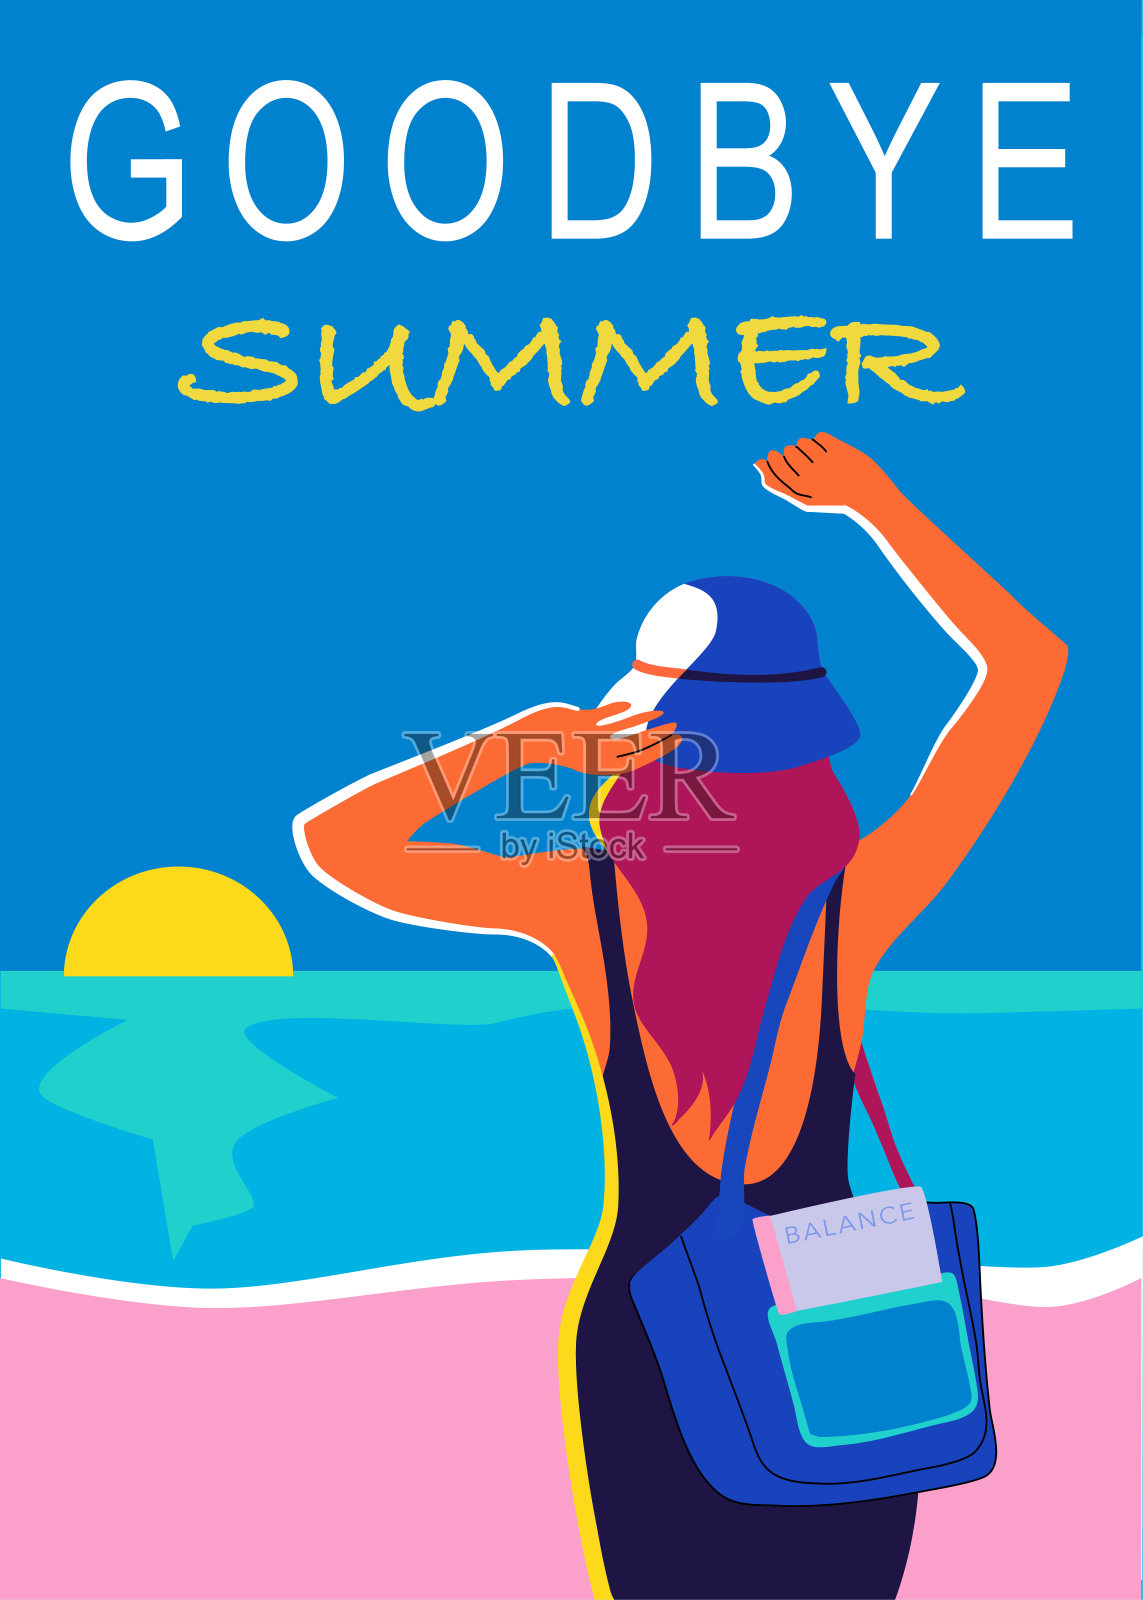 再见夏天五颜六色的海报插画图片素材